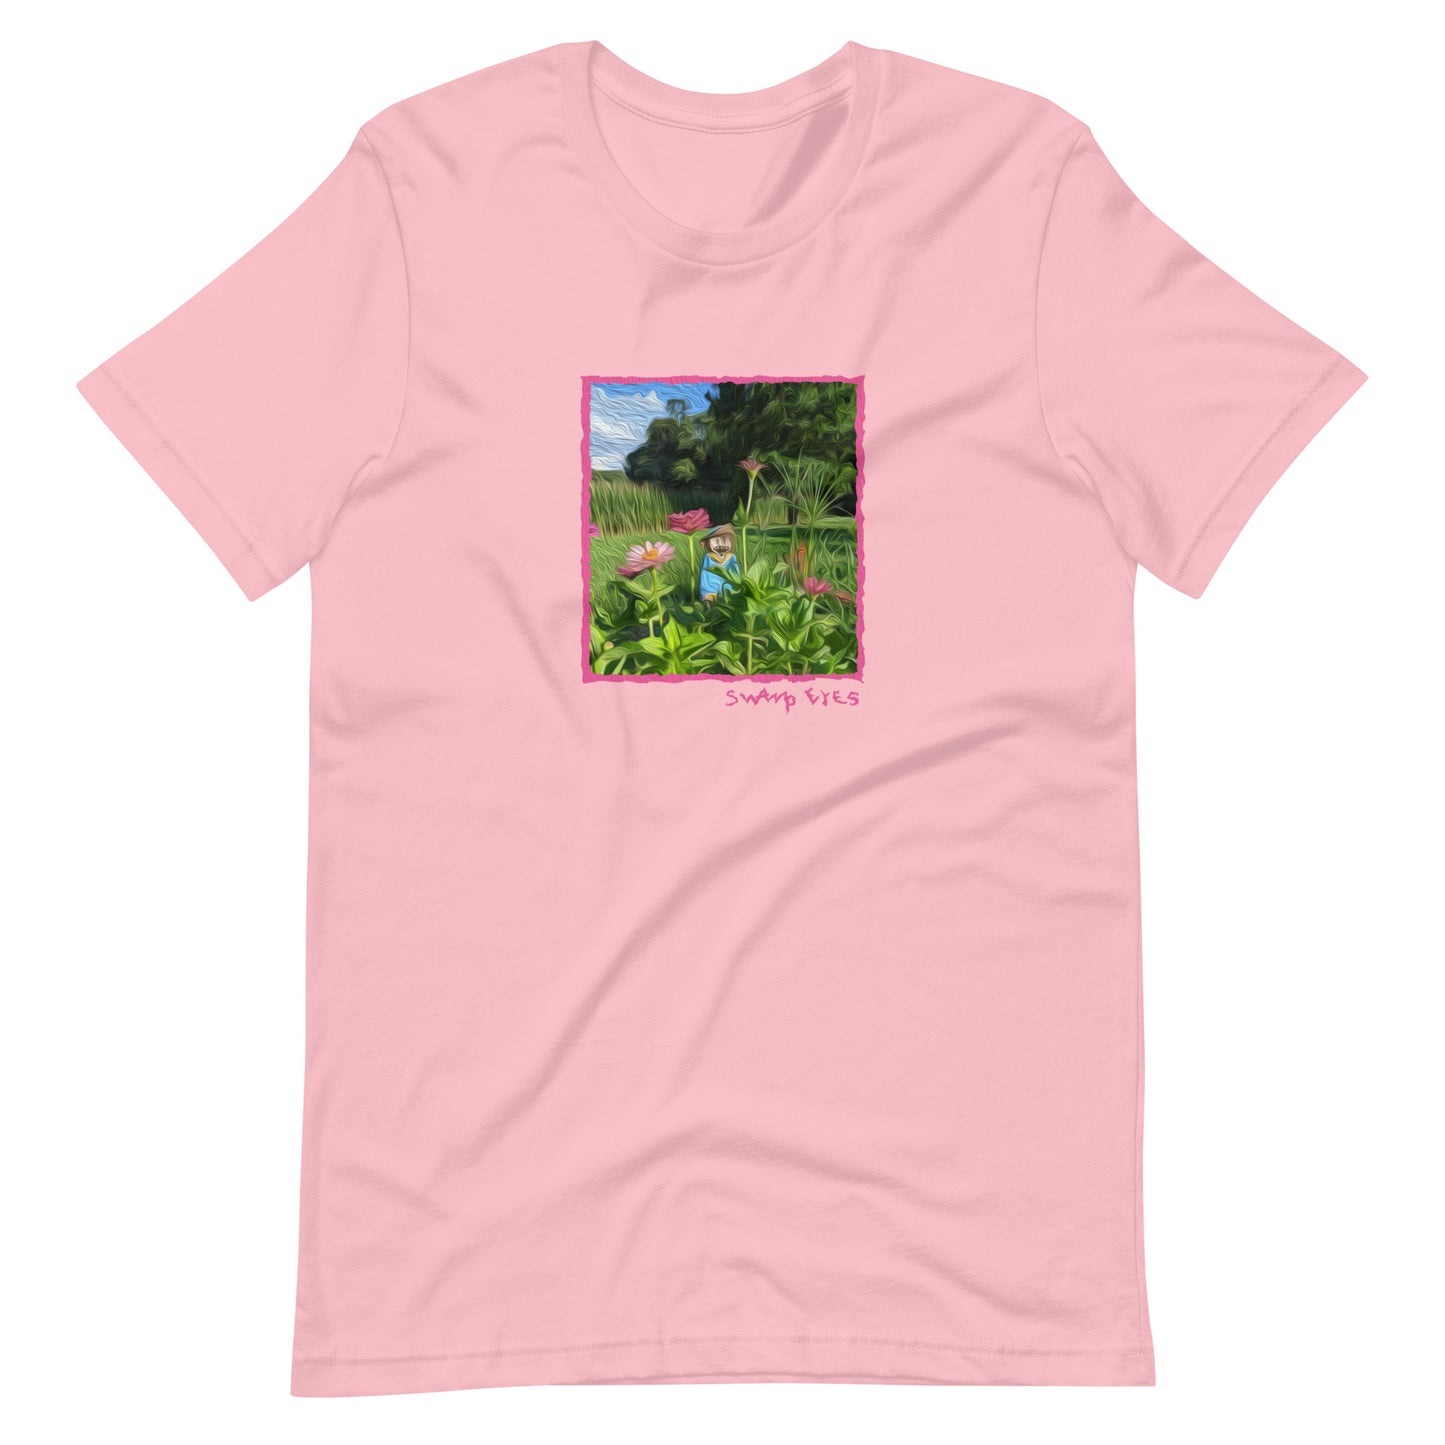 Swamp Eyes Flowers T-Shirt